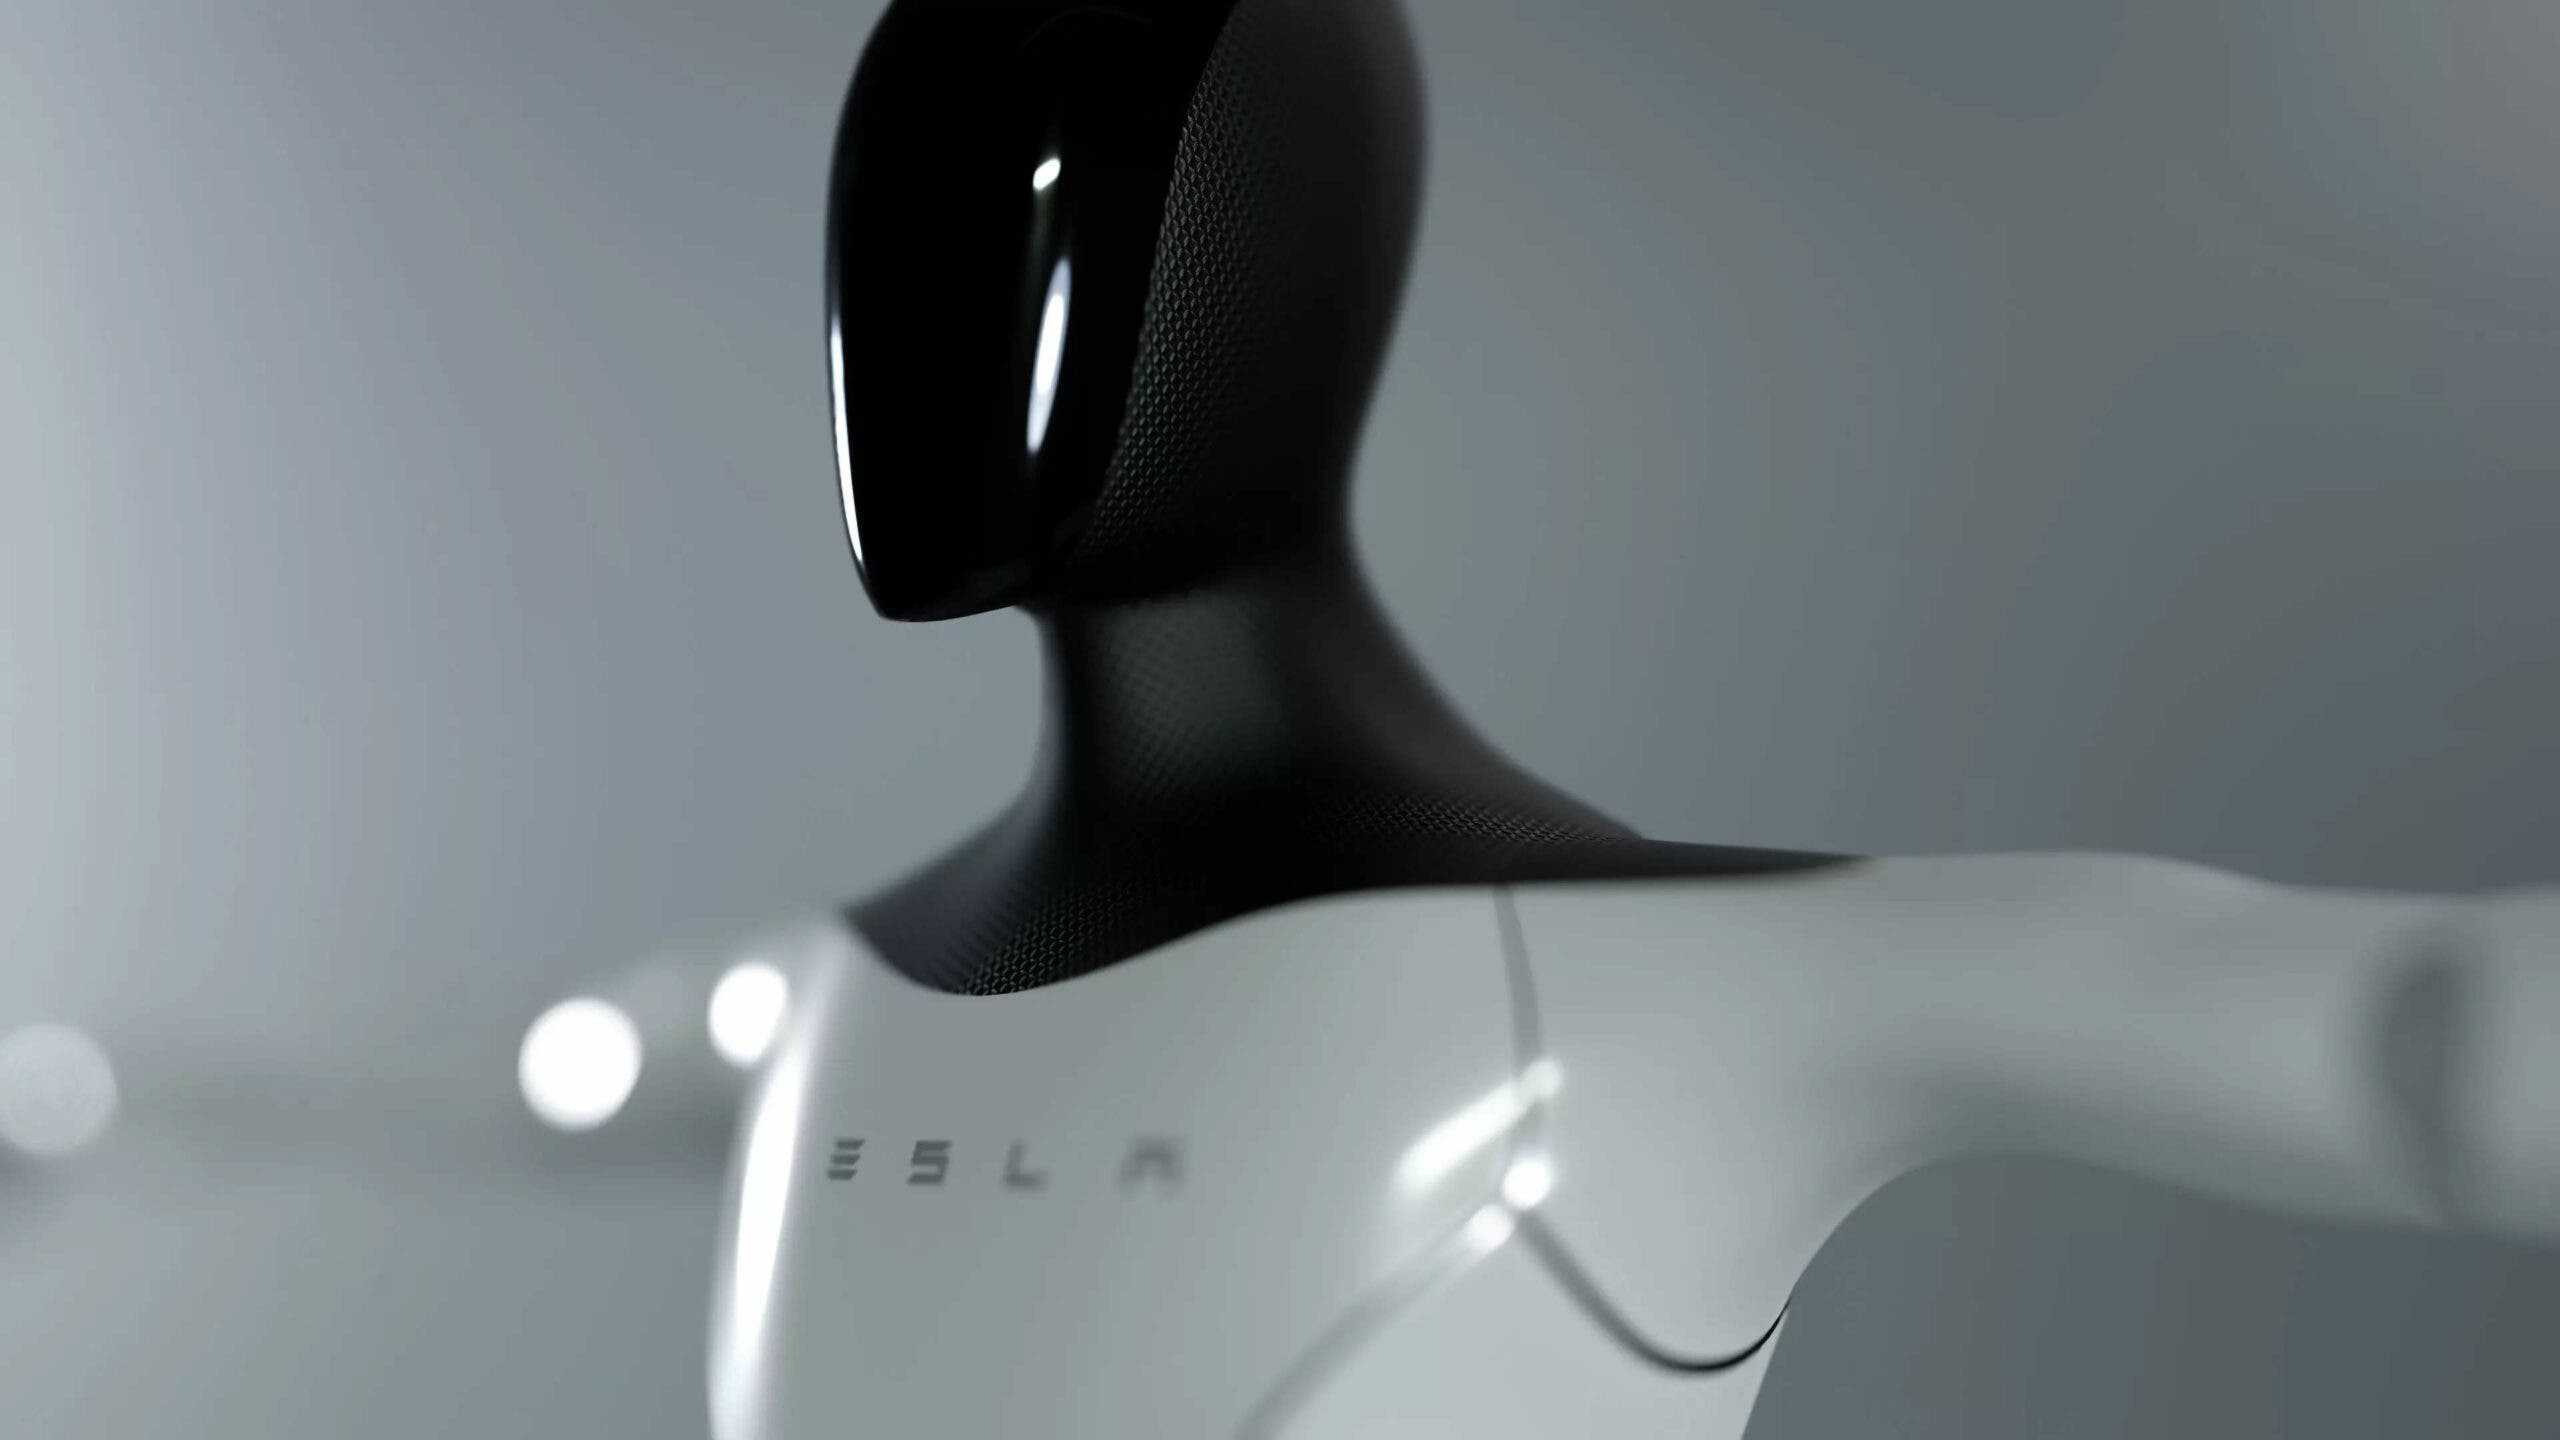 Tesla Bot Optimus Wallpapers